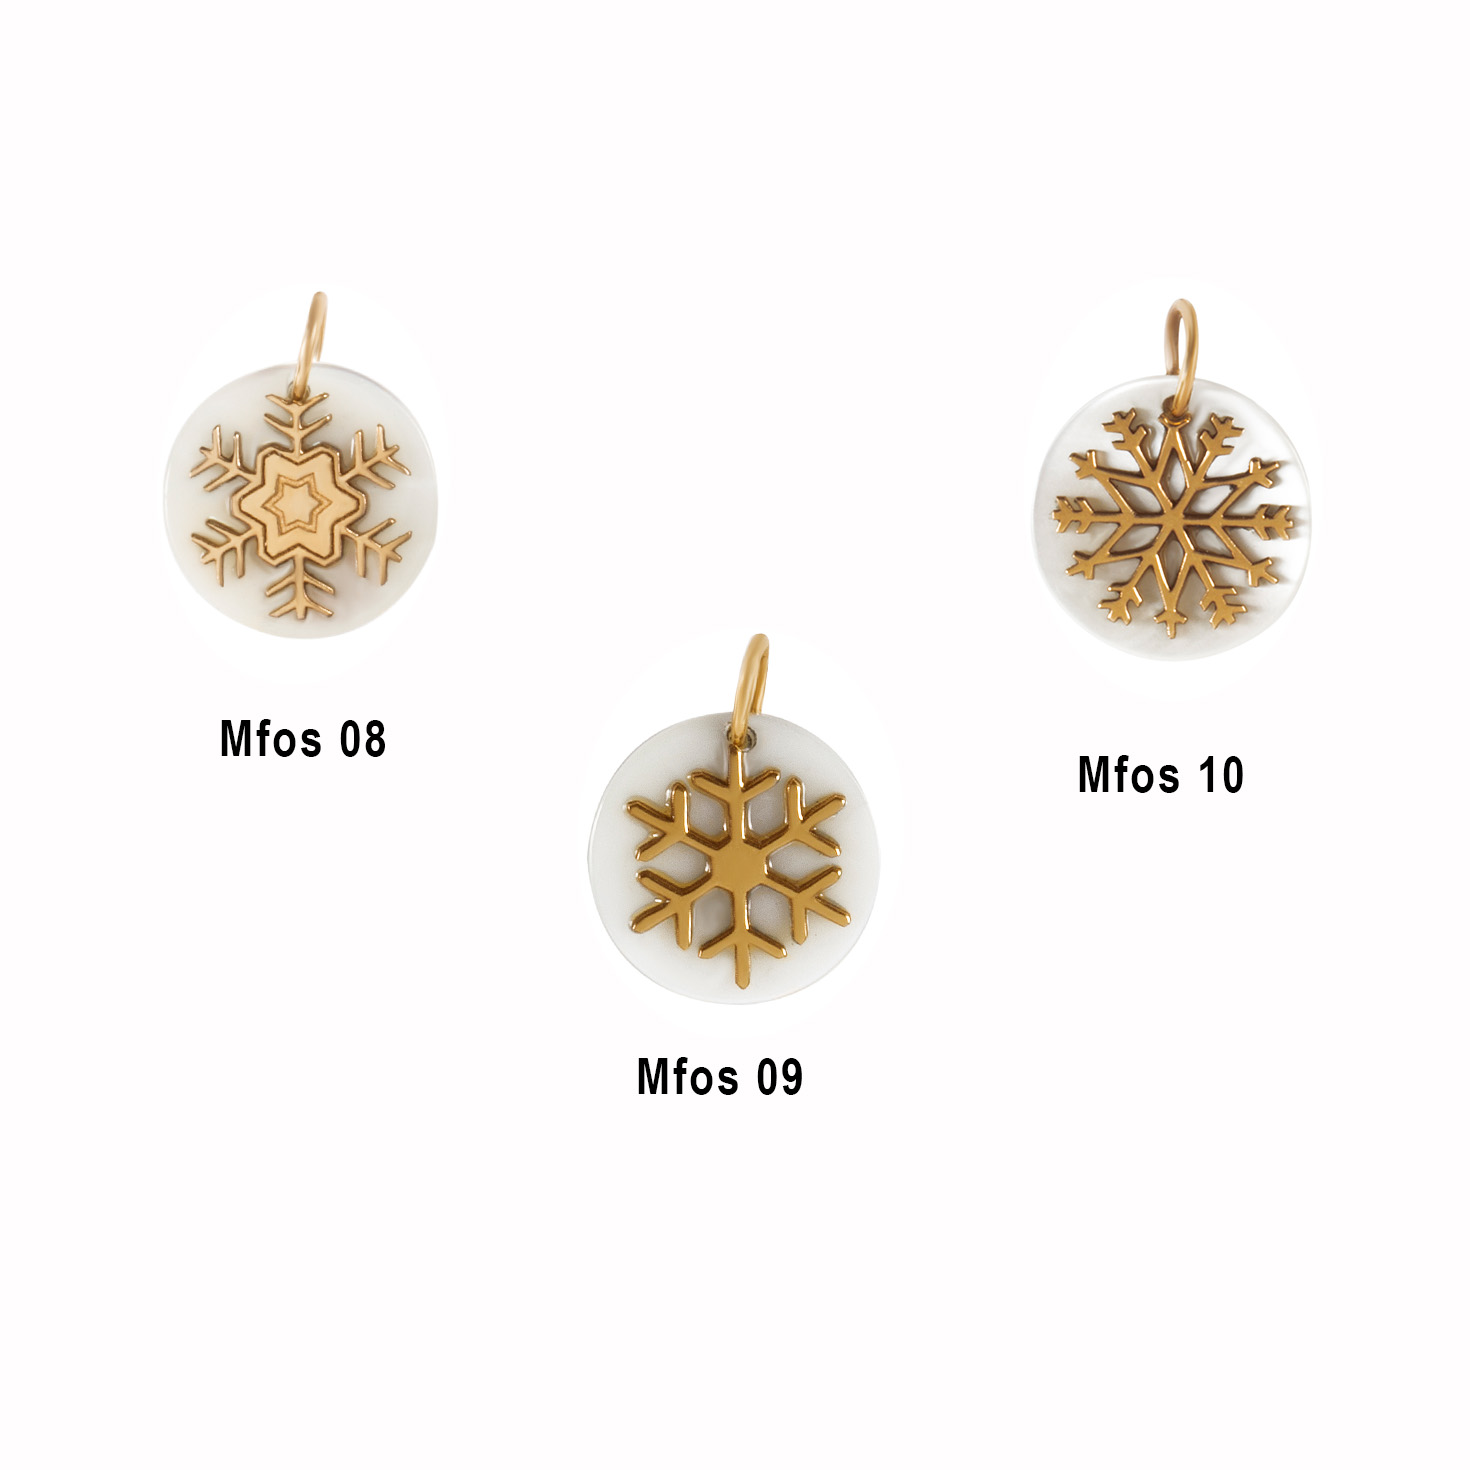 Snowflakes pendants